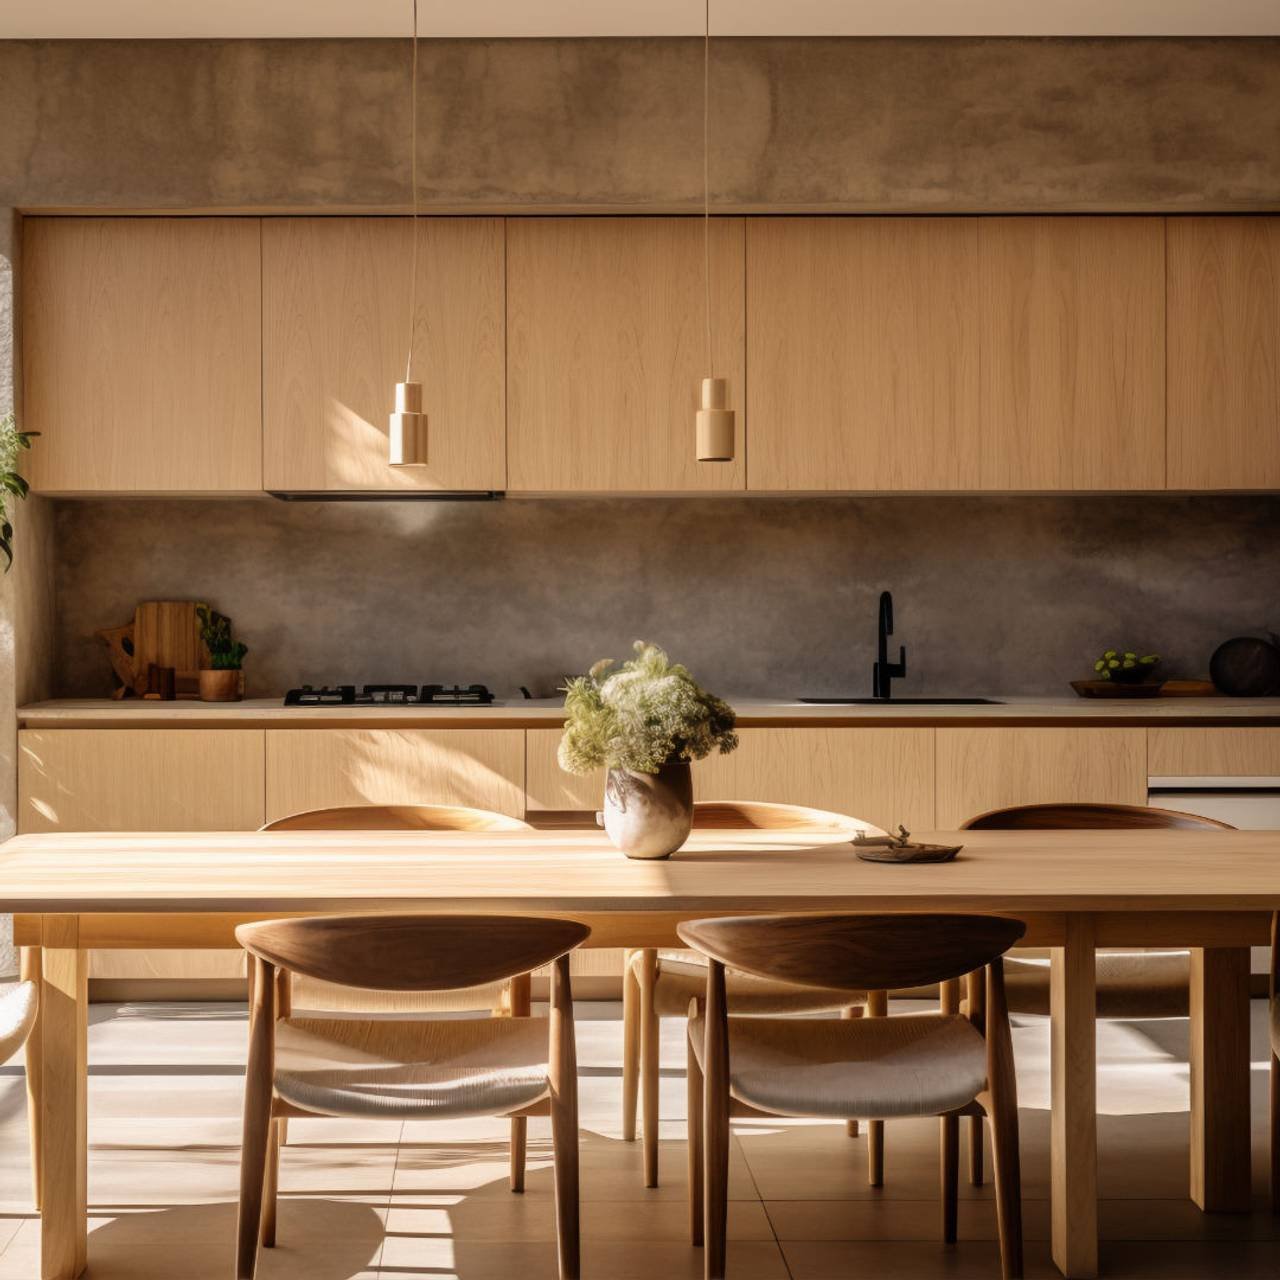 cozinha moderna com decoracao interior e mobiliario contemporaneo